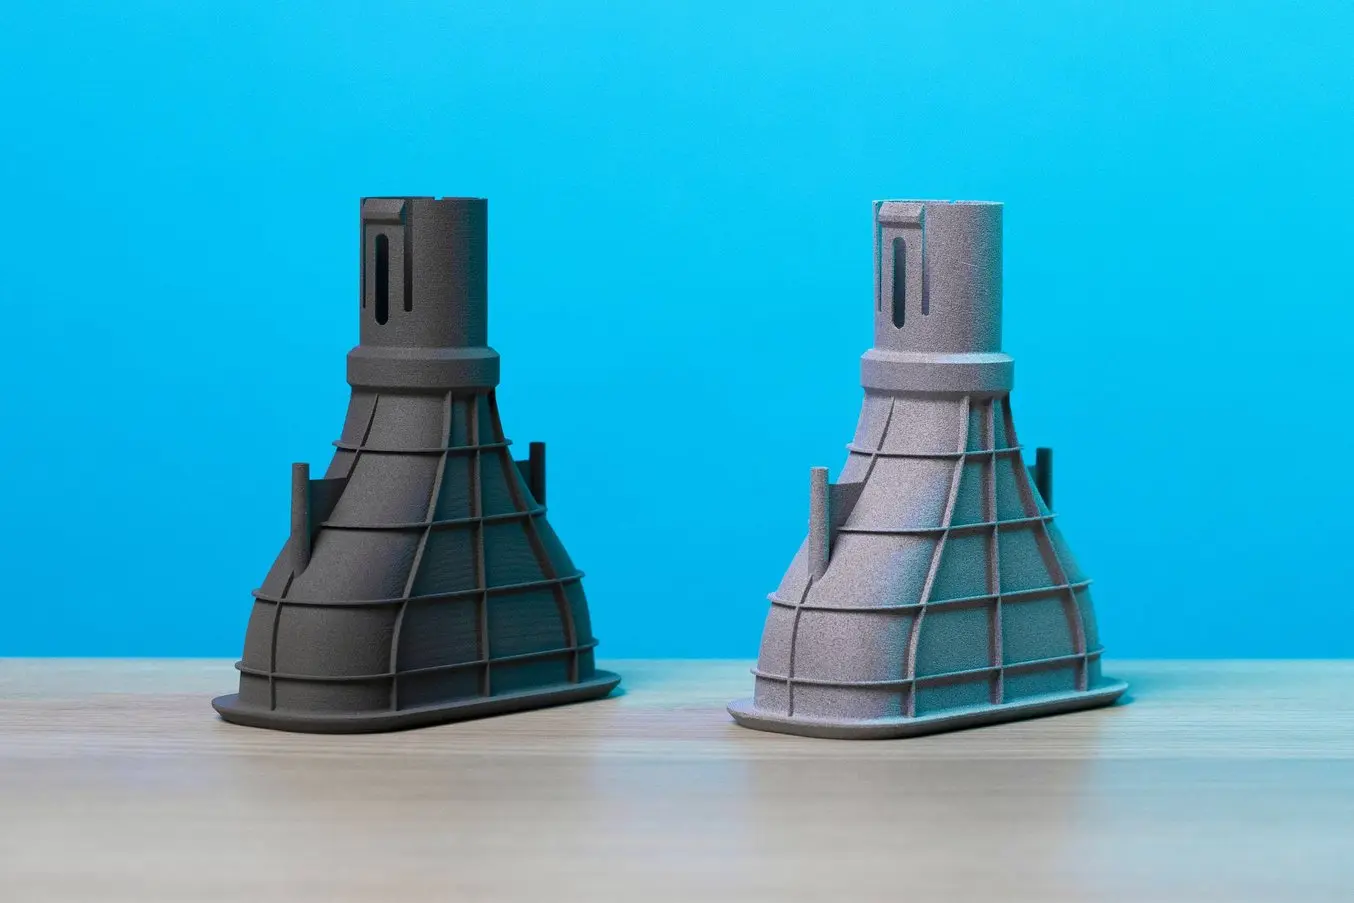 SLS 3D printed part cost comparison - automotive manifold prototype - in-house vs service bureau (outsource)